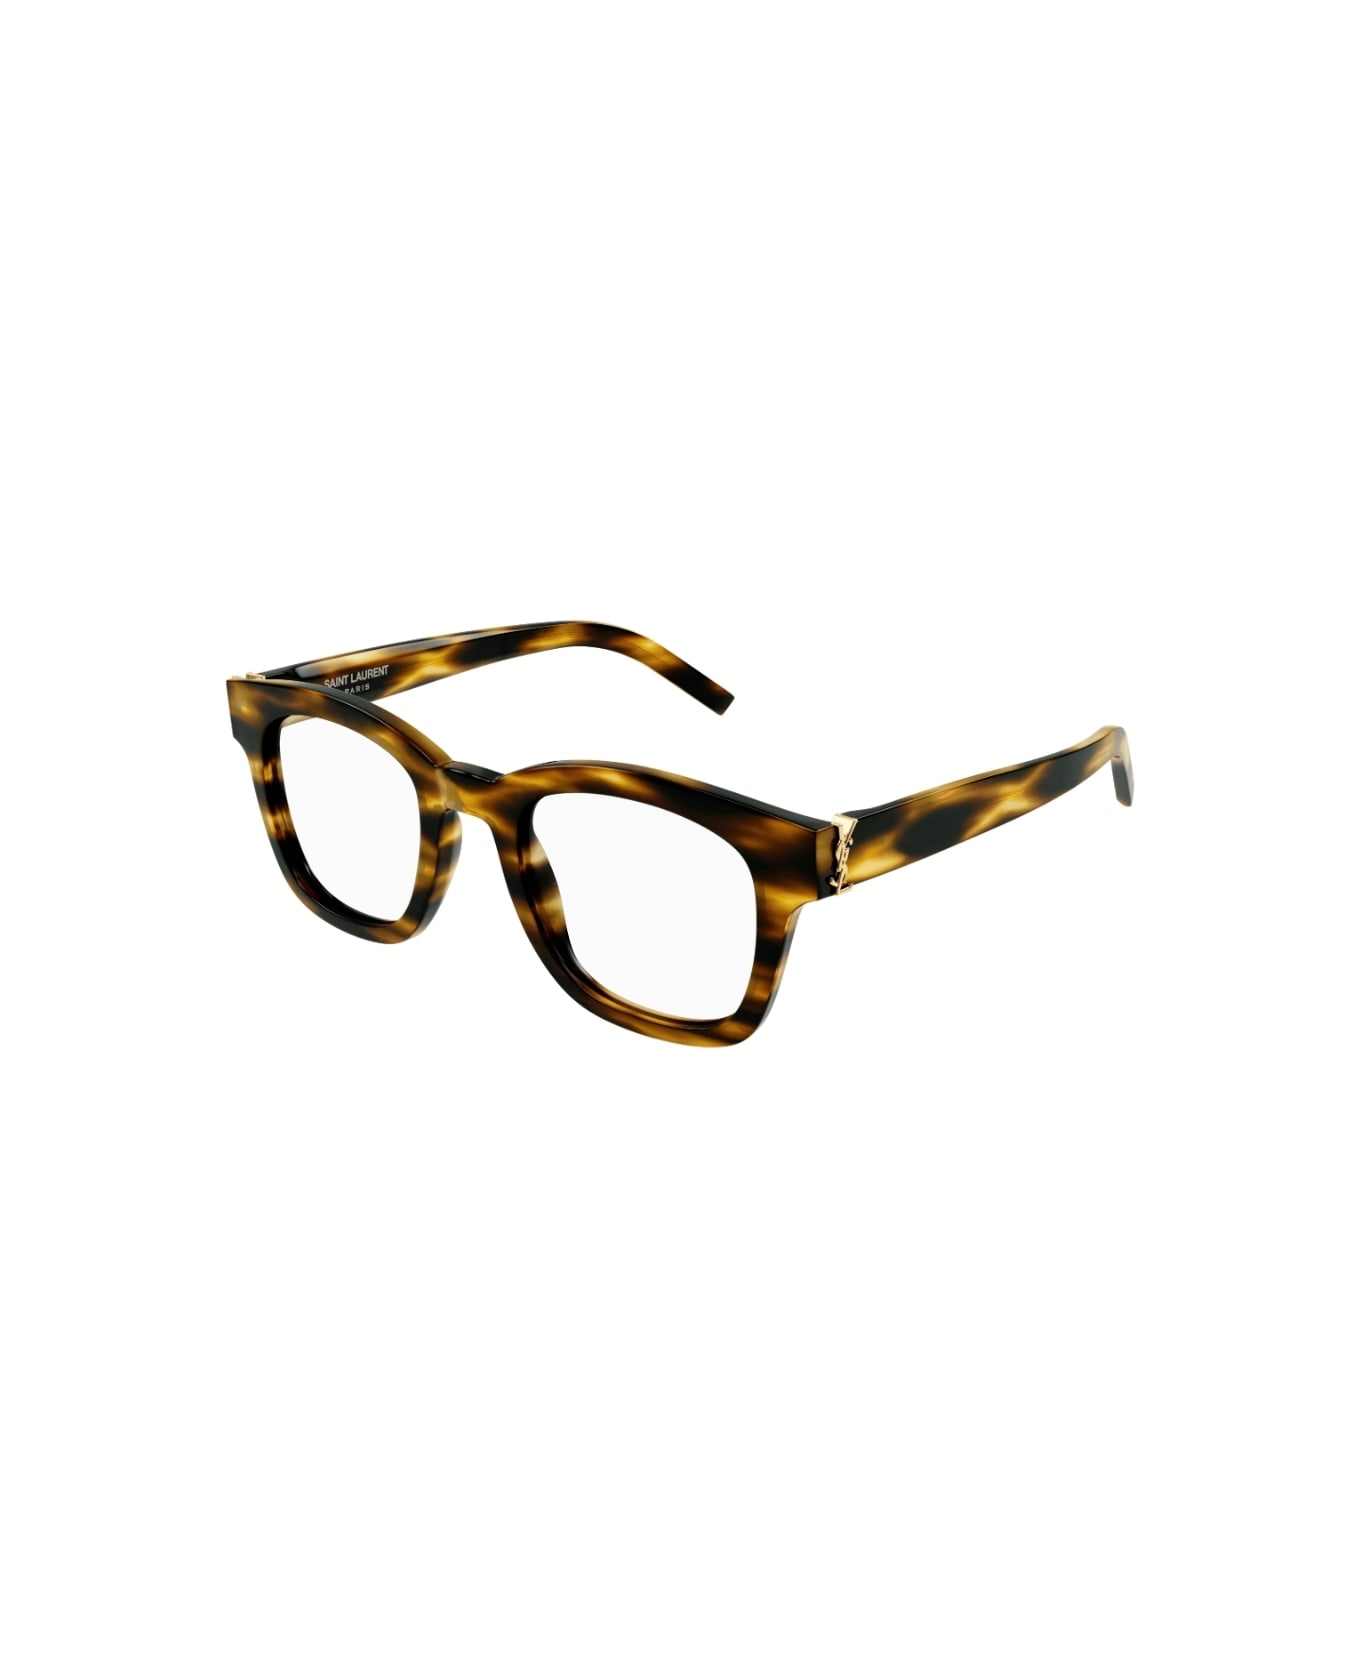 Saint Laurent Eyewear SL M124 003 Glasses - Havana